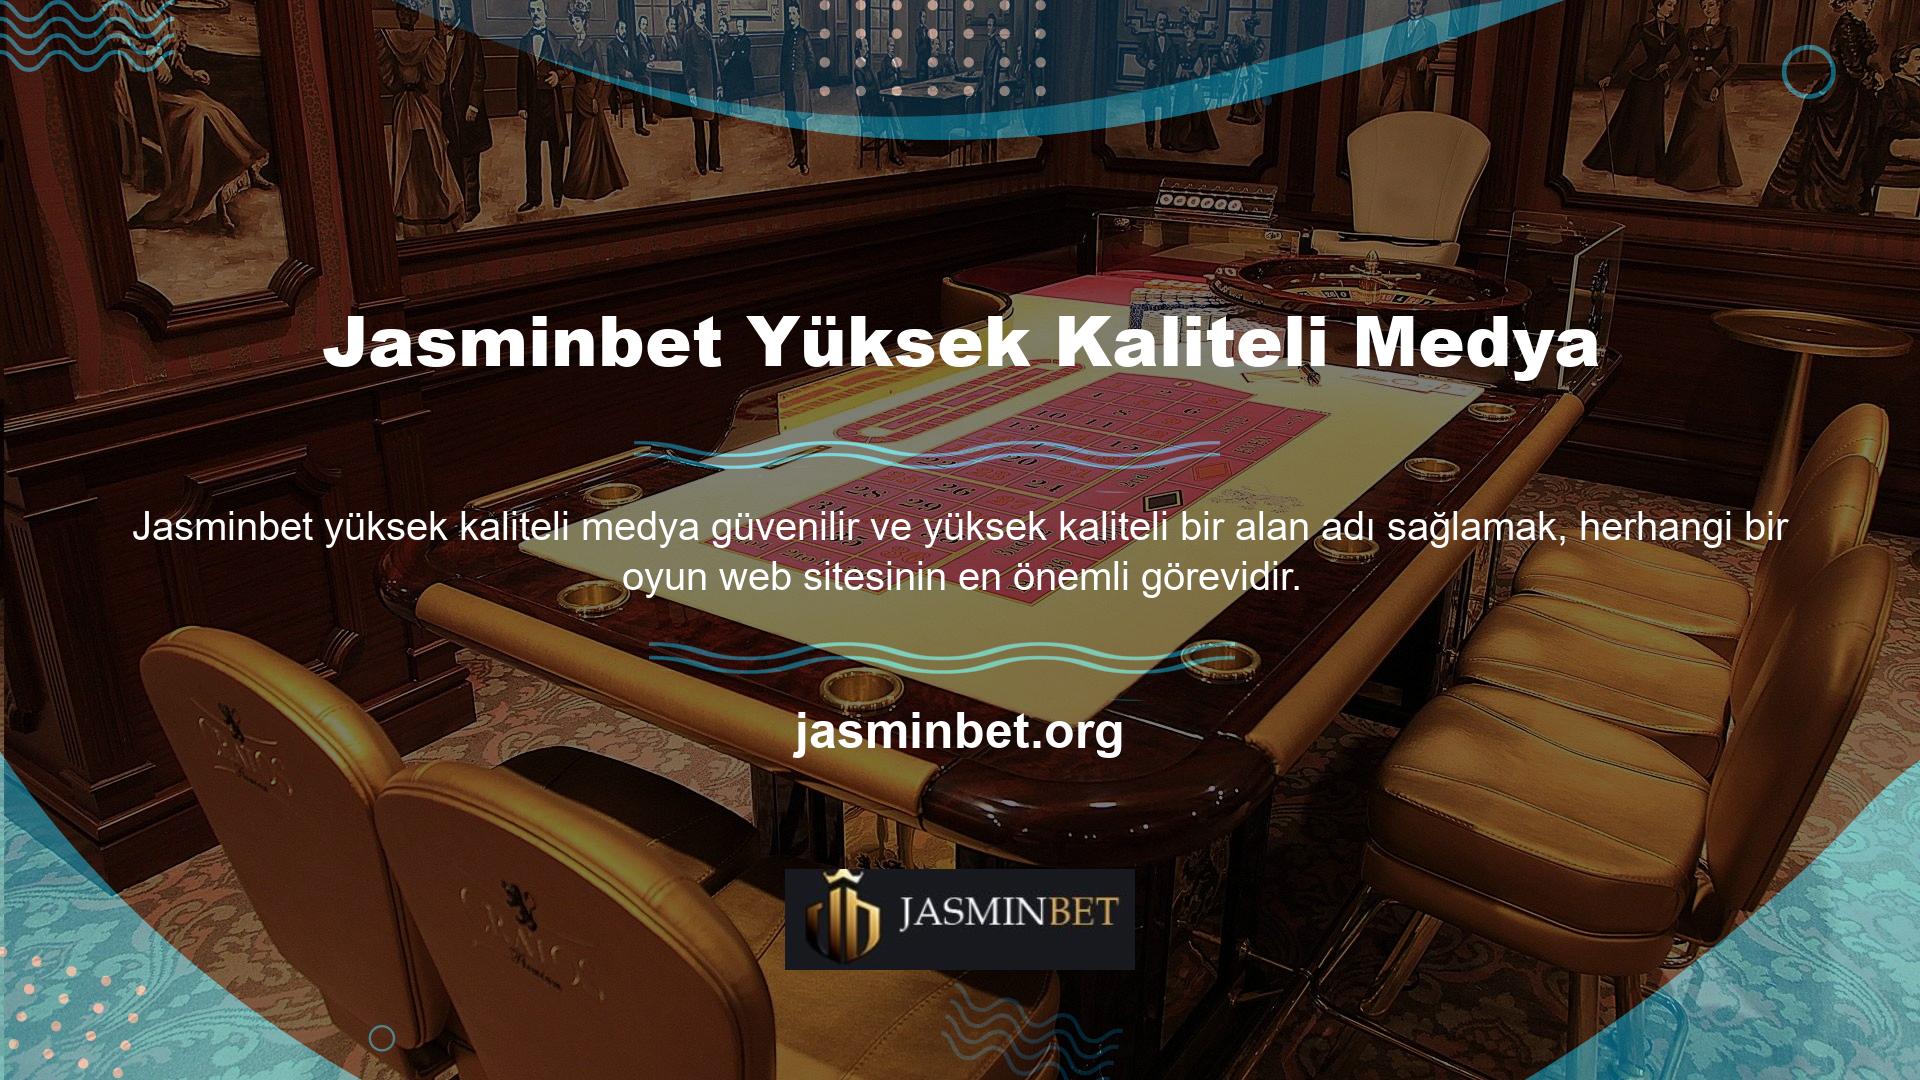 Jasminbet, konuyla ilgili tüm bahisçilerden tüm puanları alan bir bahis sitesidir